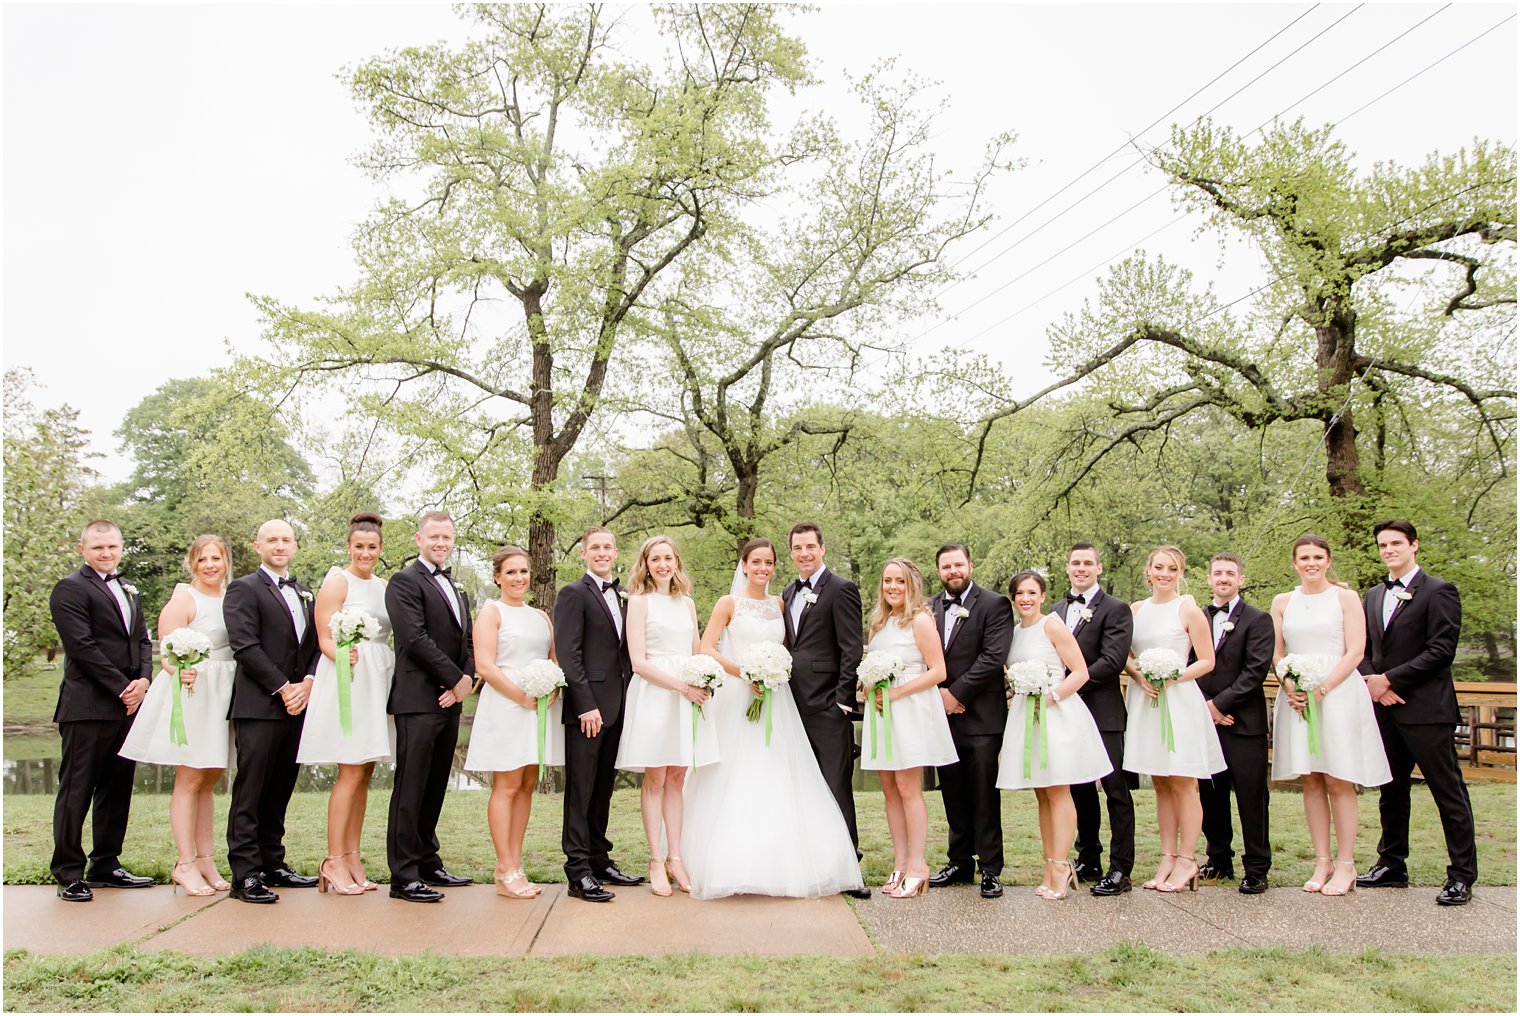 Wedding party wearing elegant white dresses and black tuxedos